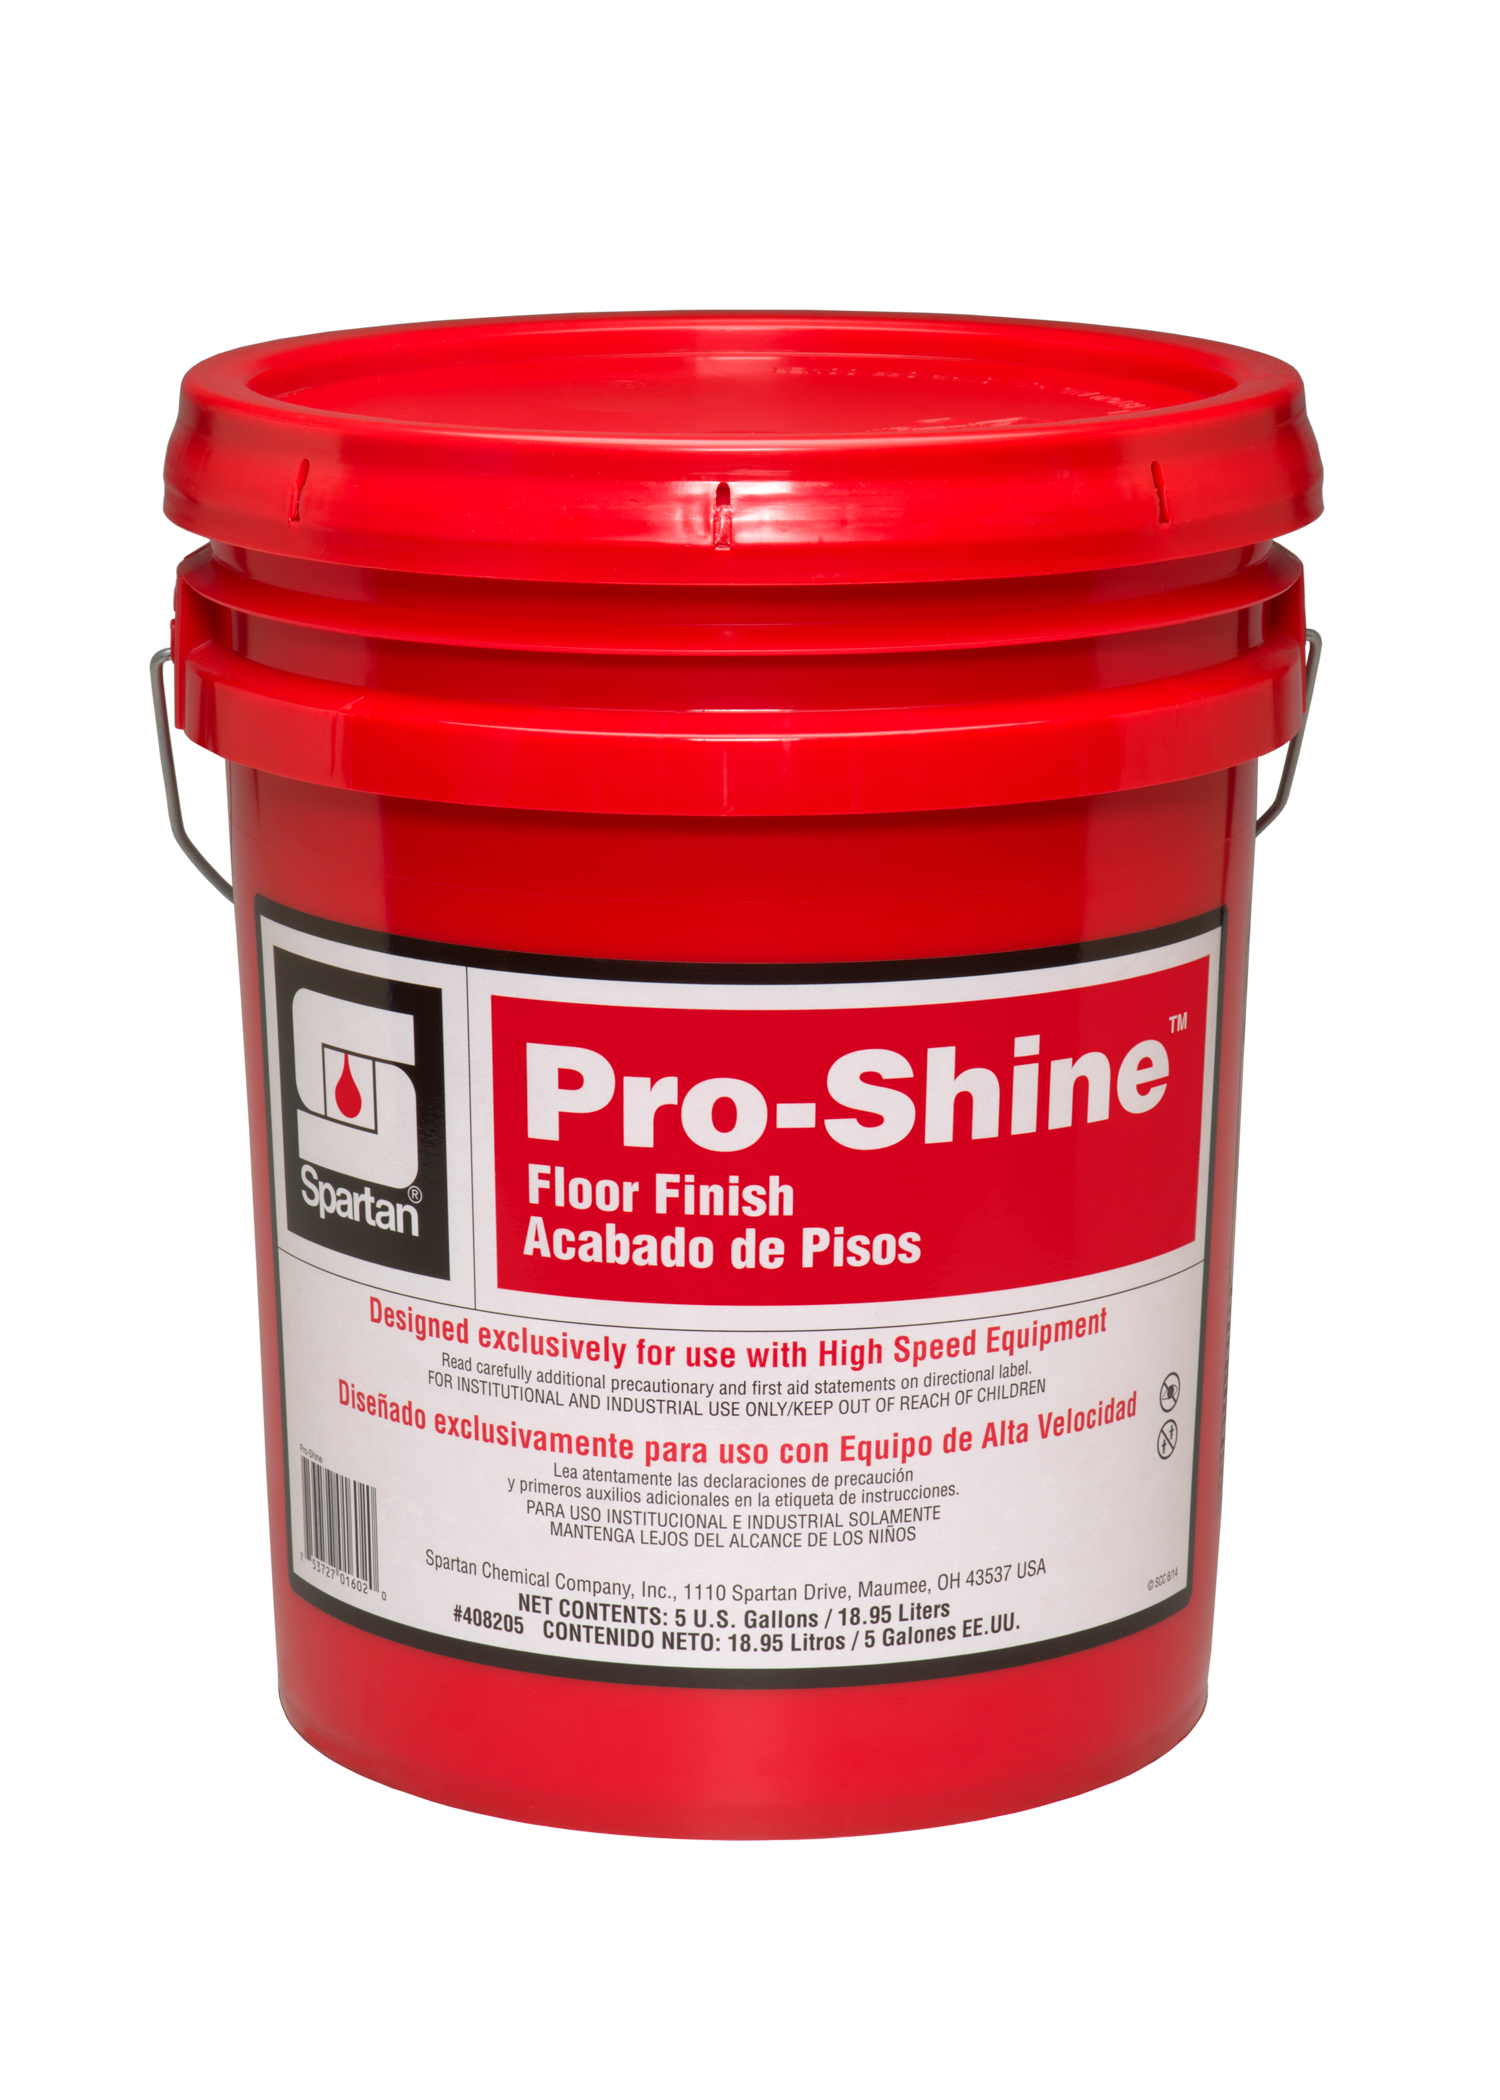 Pro-Shine 5 gallon pail